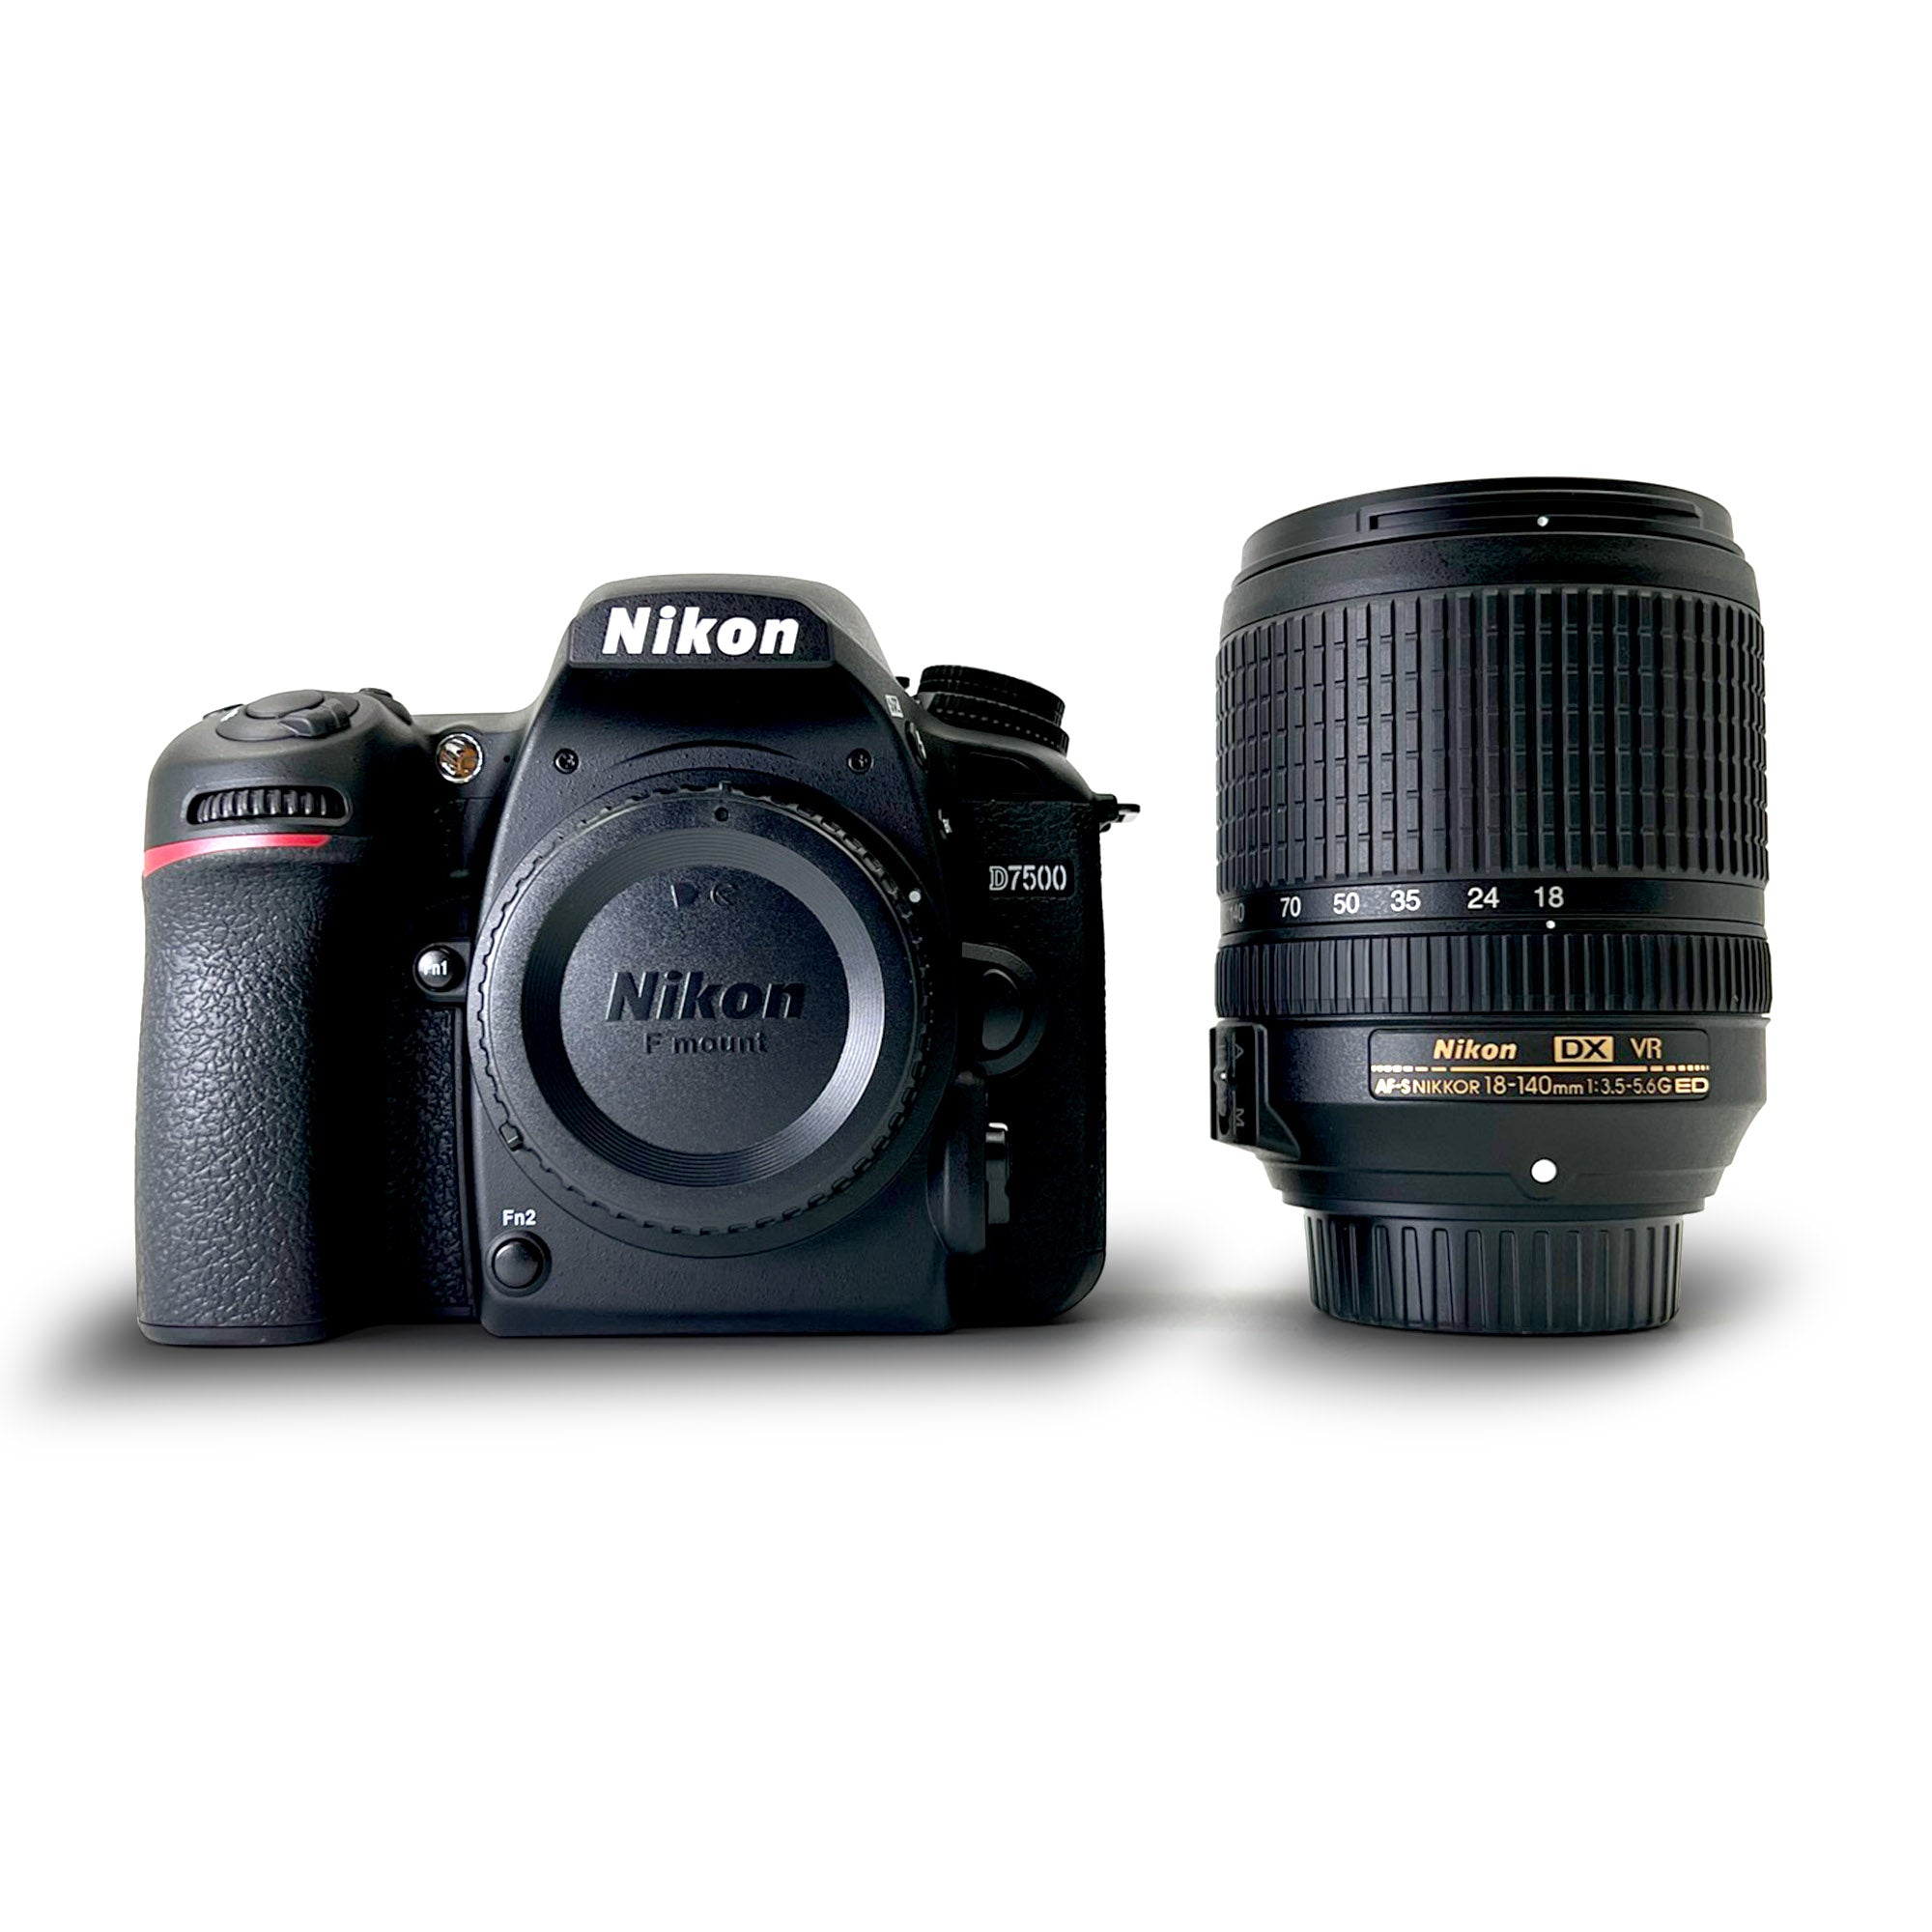 Nikon D7500 20.9MP DSLR Camera with AF-S DX NIKKOR 18-140mm f/3.5-5.6G